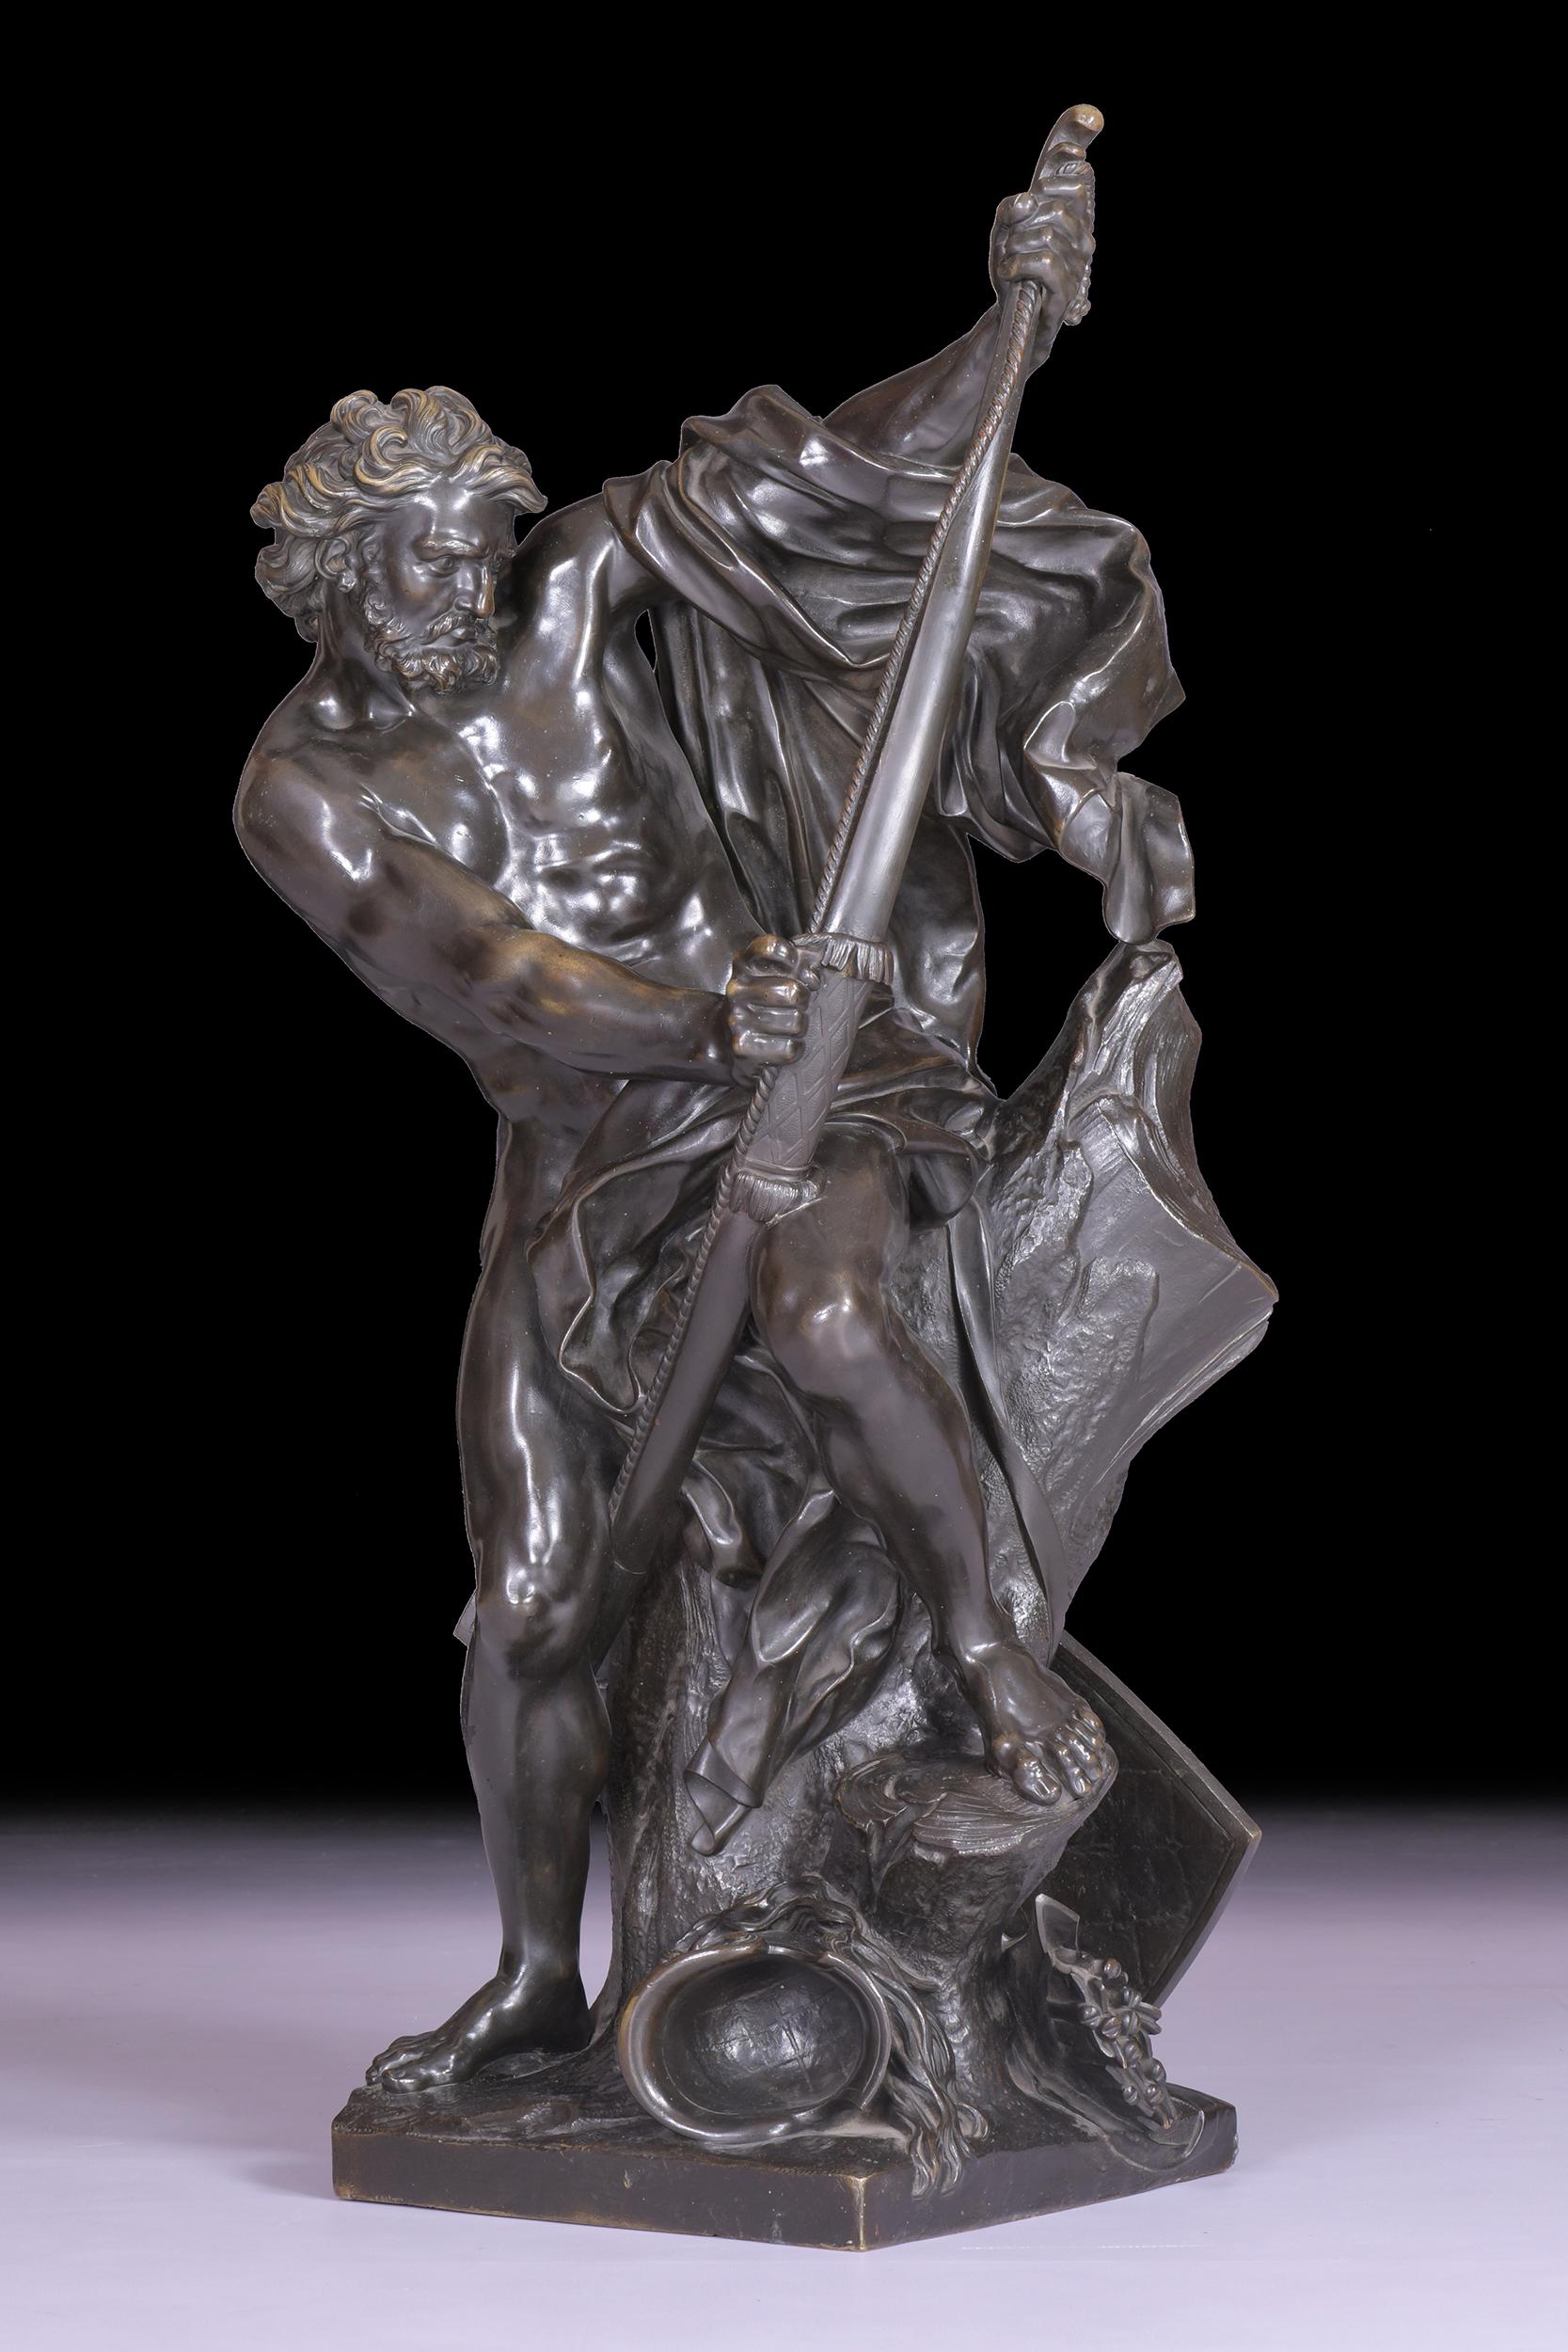 Un magnifique bronze du 19ème siècle représentant Ulysse tendant son arc sur une base carrée. D'après Jacques Bousseau (1681-1740).

Vers 1830

Français

Dimensions :

H : 35 in / 89 cm
L : 11 in / 28 cm
D : 11 in / 28 cm.